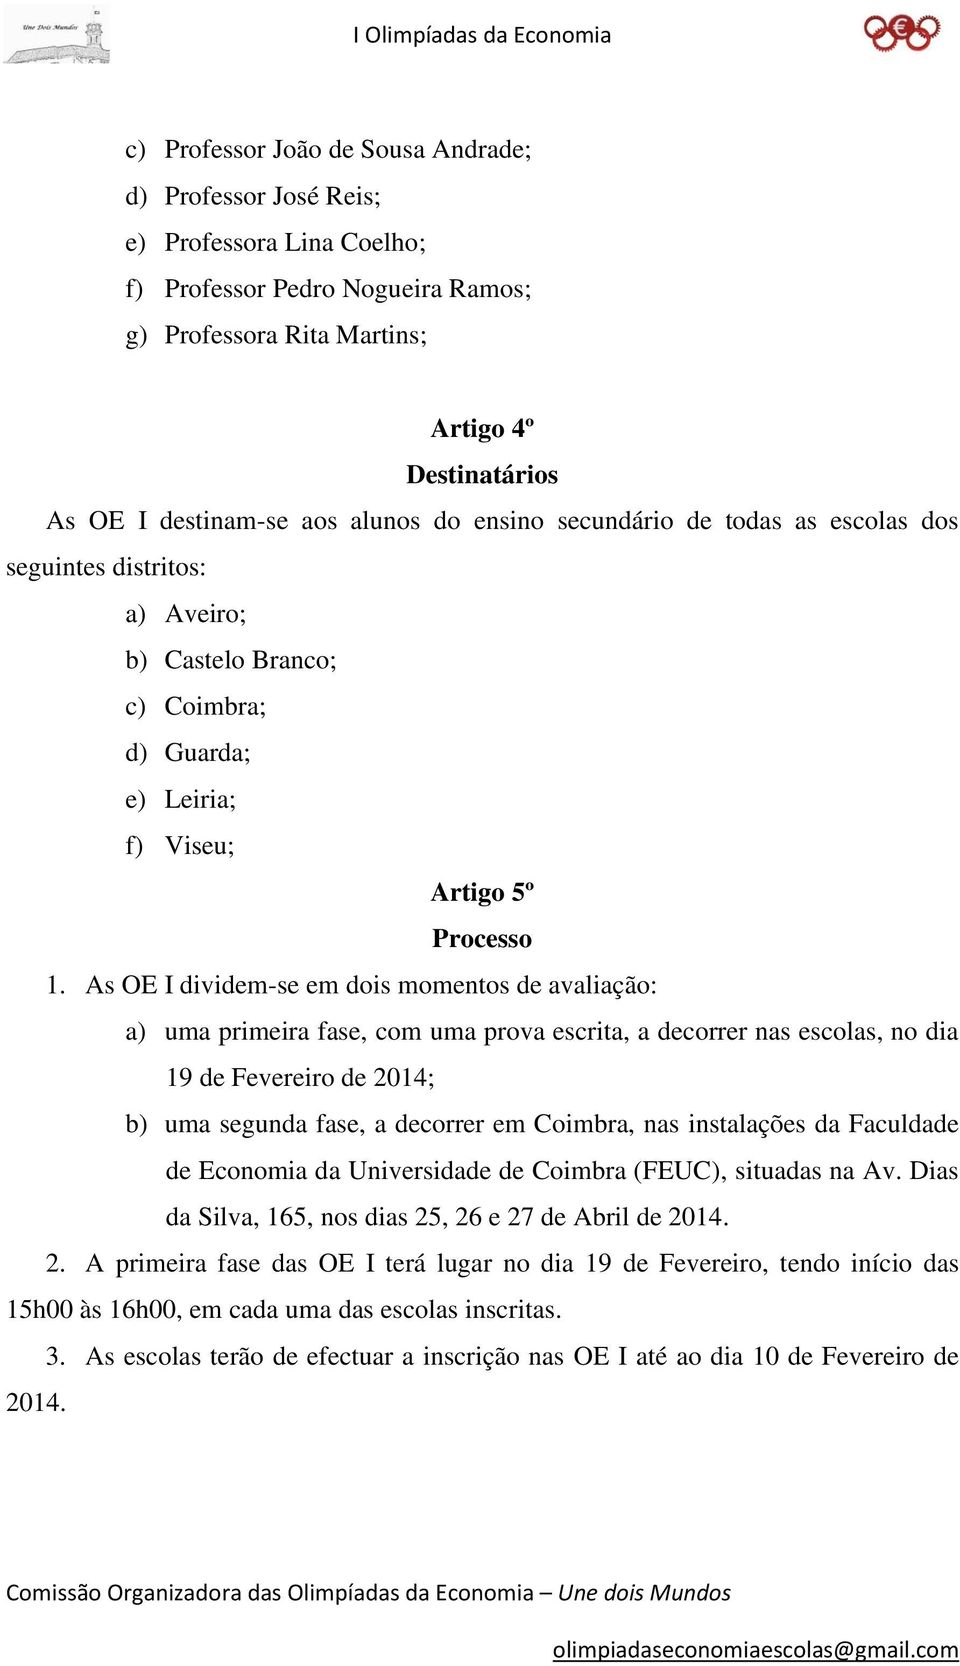 As OE I dividem-se em dois momentos de avaliação: a) uma primeira fase, com uma prova escrita, a decorrer nas escolas, no dia 19 de Fevereiro de 2014; b) uma segunda fase, a decorrer em Coimbra, nas